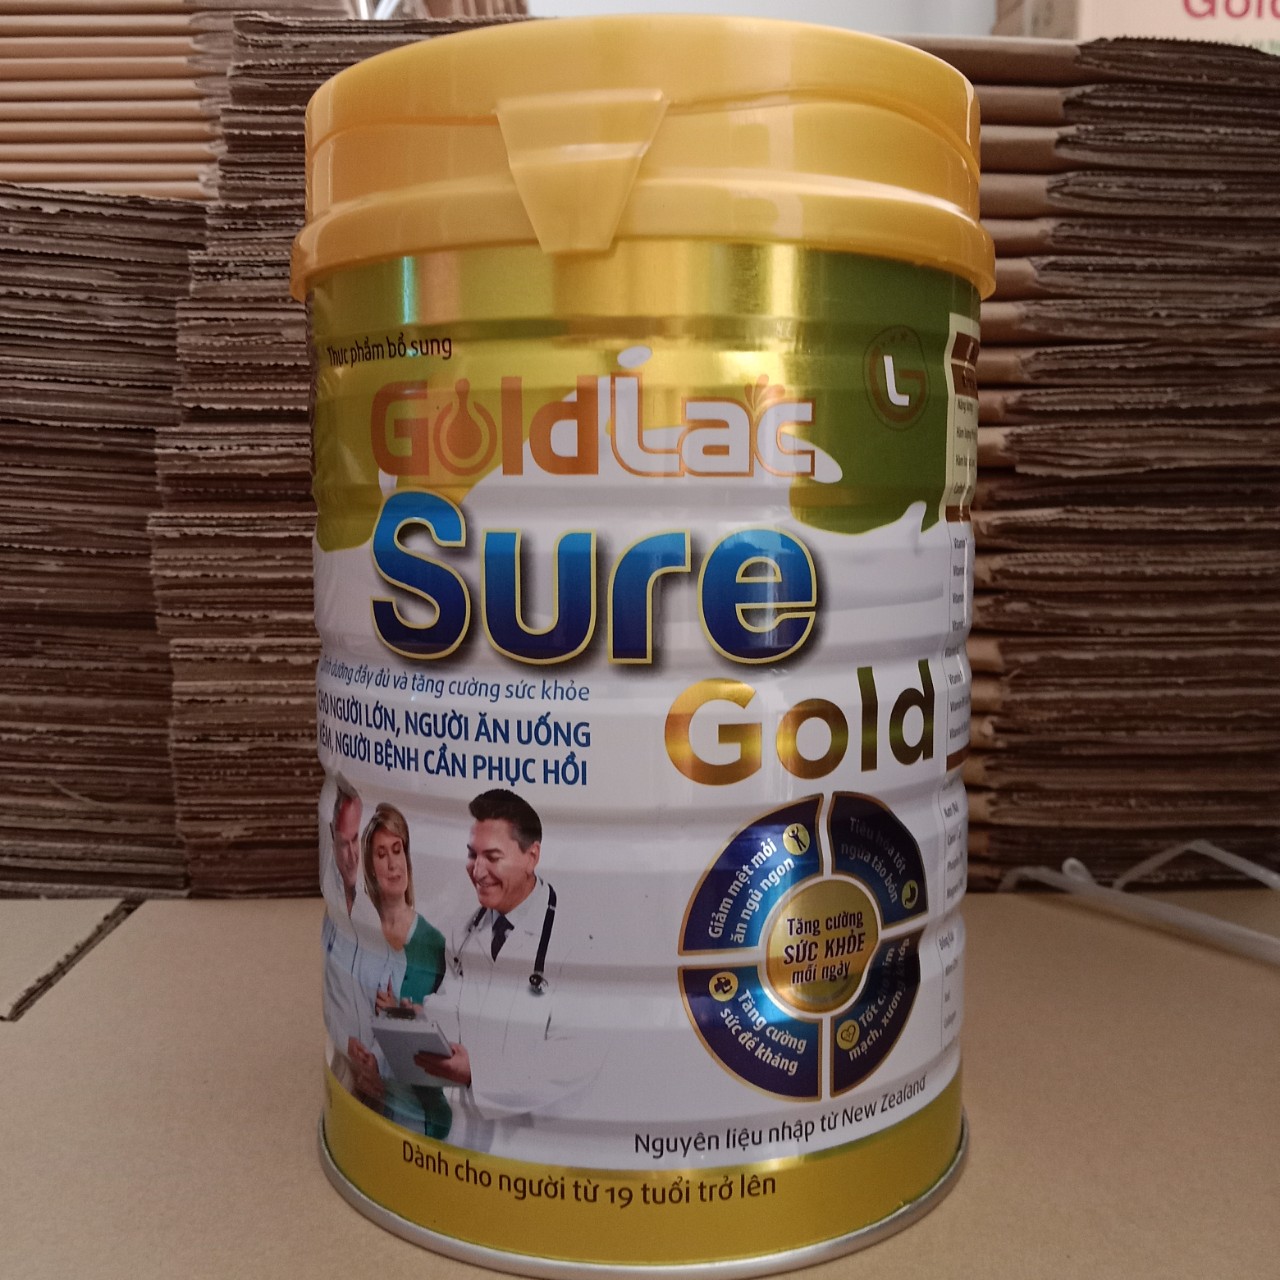 Sữa cho người già phục hồi sức khỏe Goldlac Sure Gold Hộp 900g (Giải pháp dinh dưỡng cho người cao tuổi người ốm người ăn uống kém nhanh phục hồi sức khỏe tăng cường đề kháng)